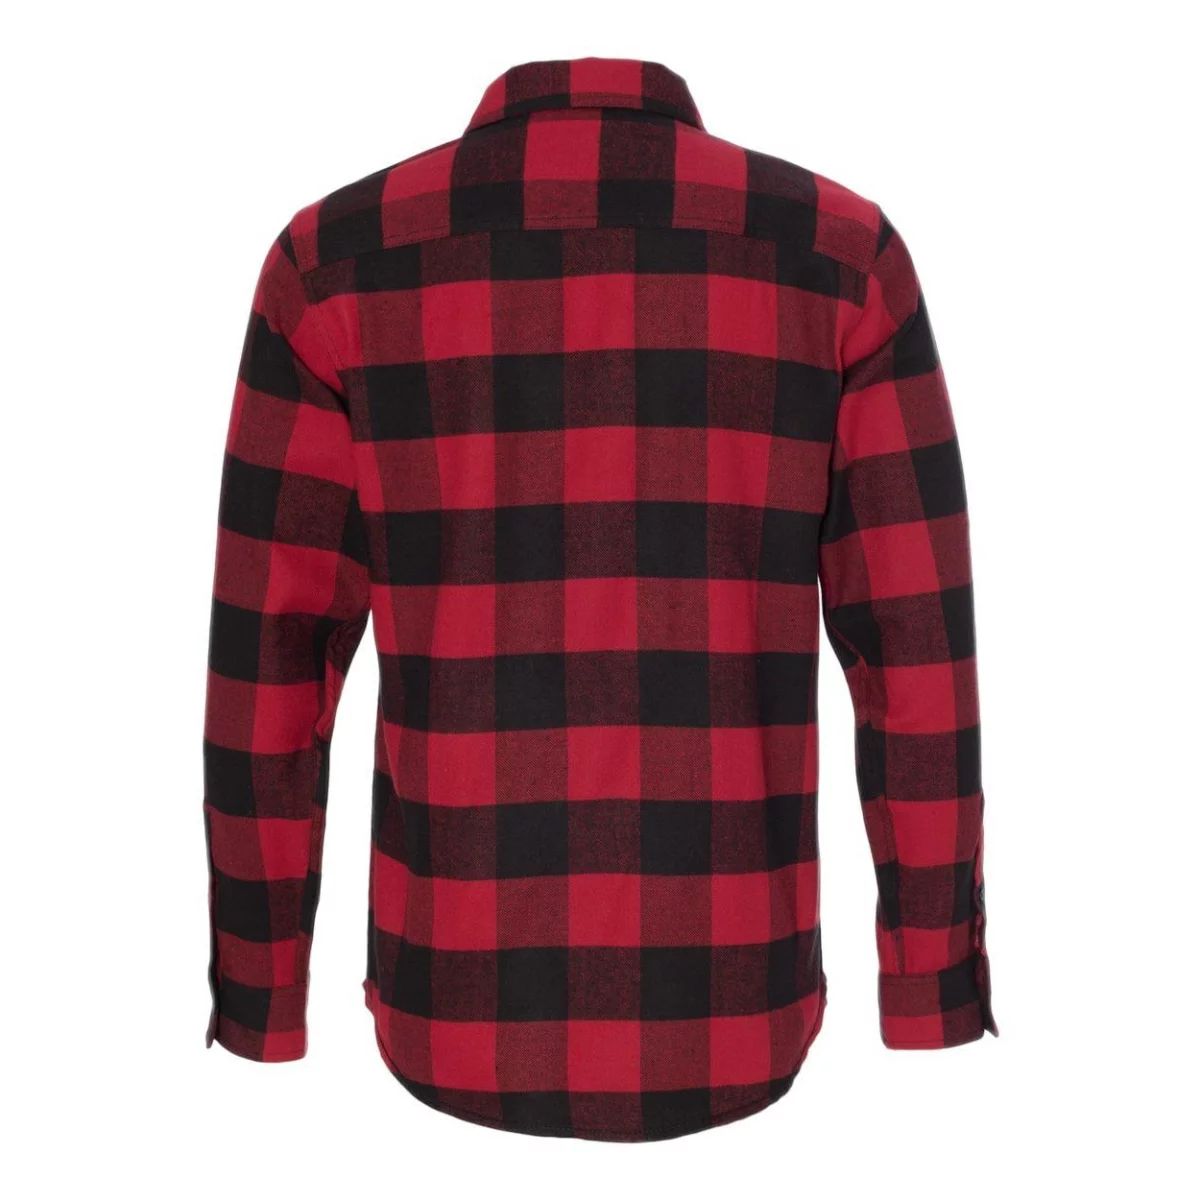 Фланелевая рубашка с длинными рукавами, окрашенная в пряже Burnside перчатки мма buffalo кожаные red black